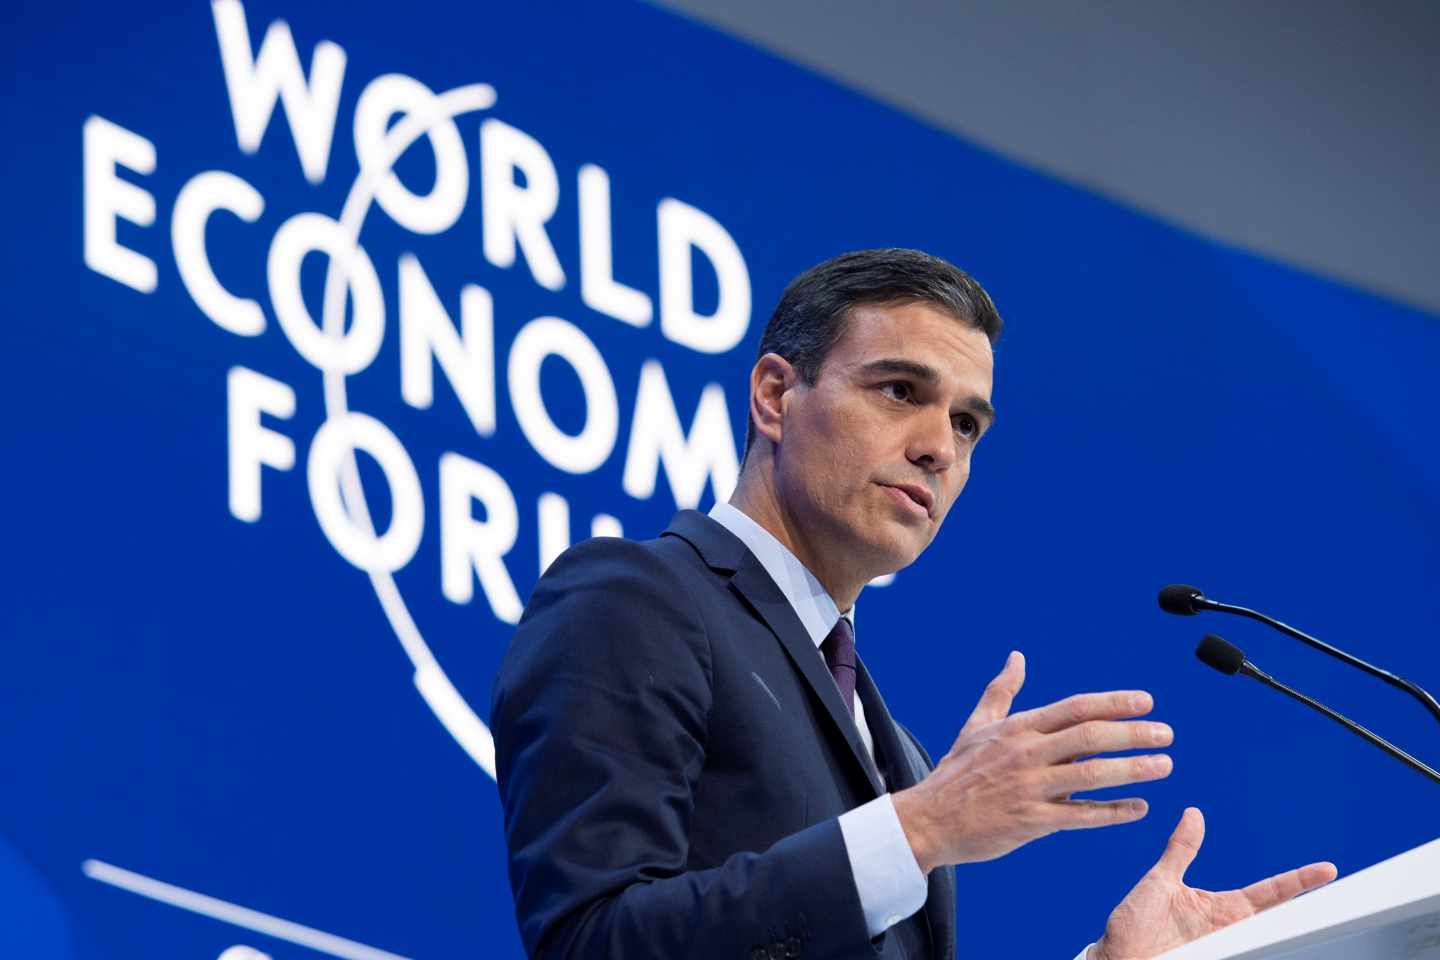 Pedro Sánchez interviene en el Foro de Davos.